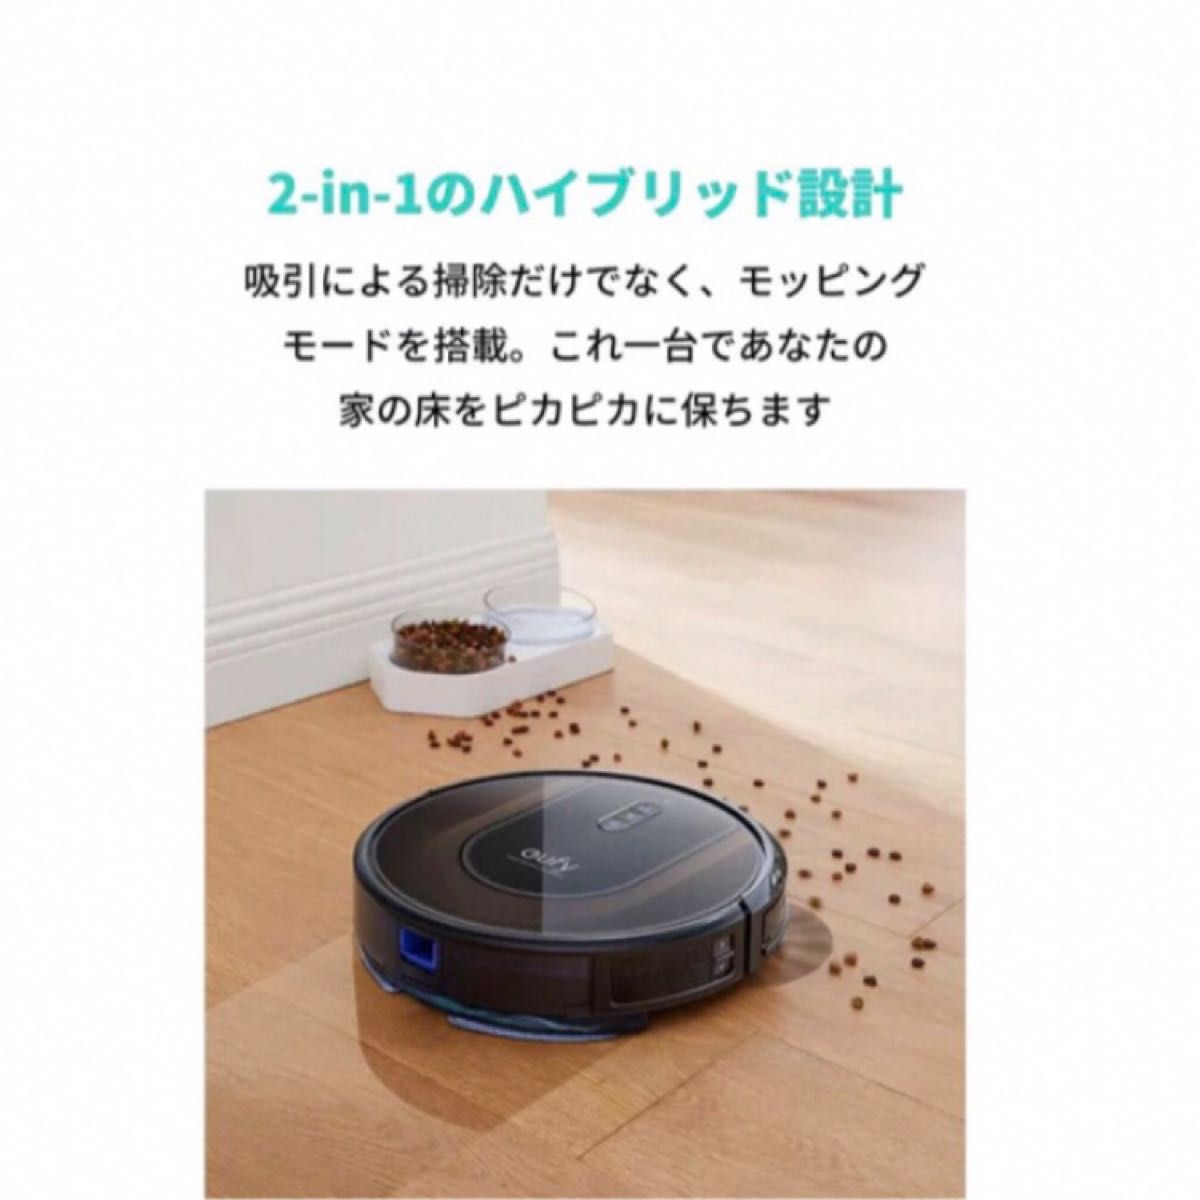 ロボット掃除機 お掃除ロボット Wi-Fi 強力吸引 自動充電 超薄型 花粉対策 自動